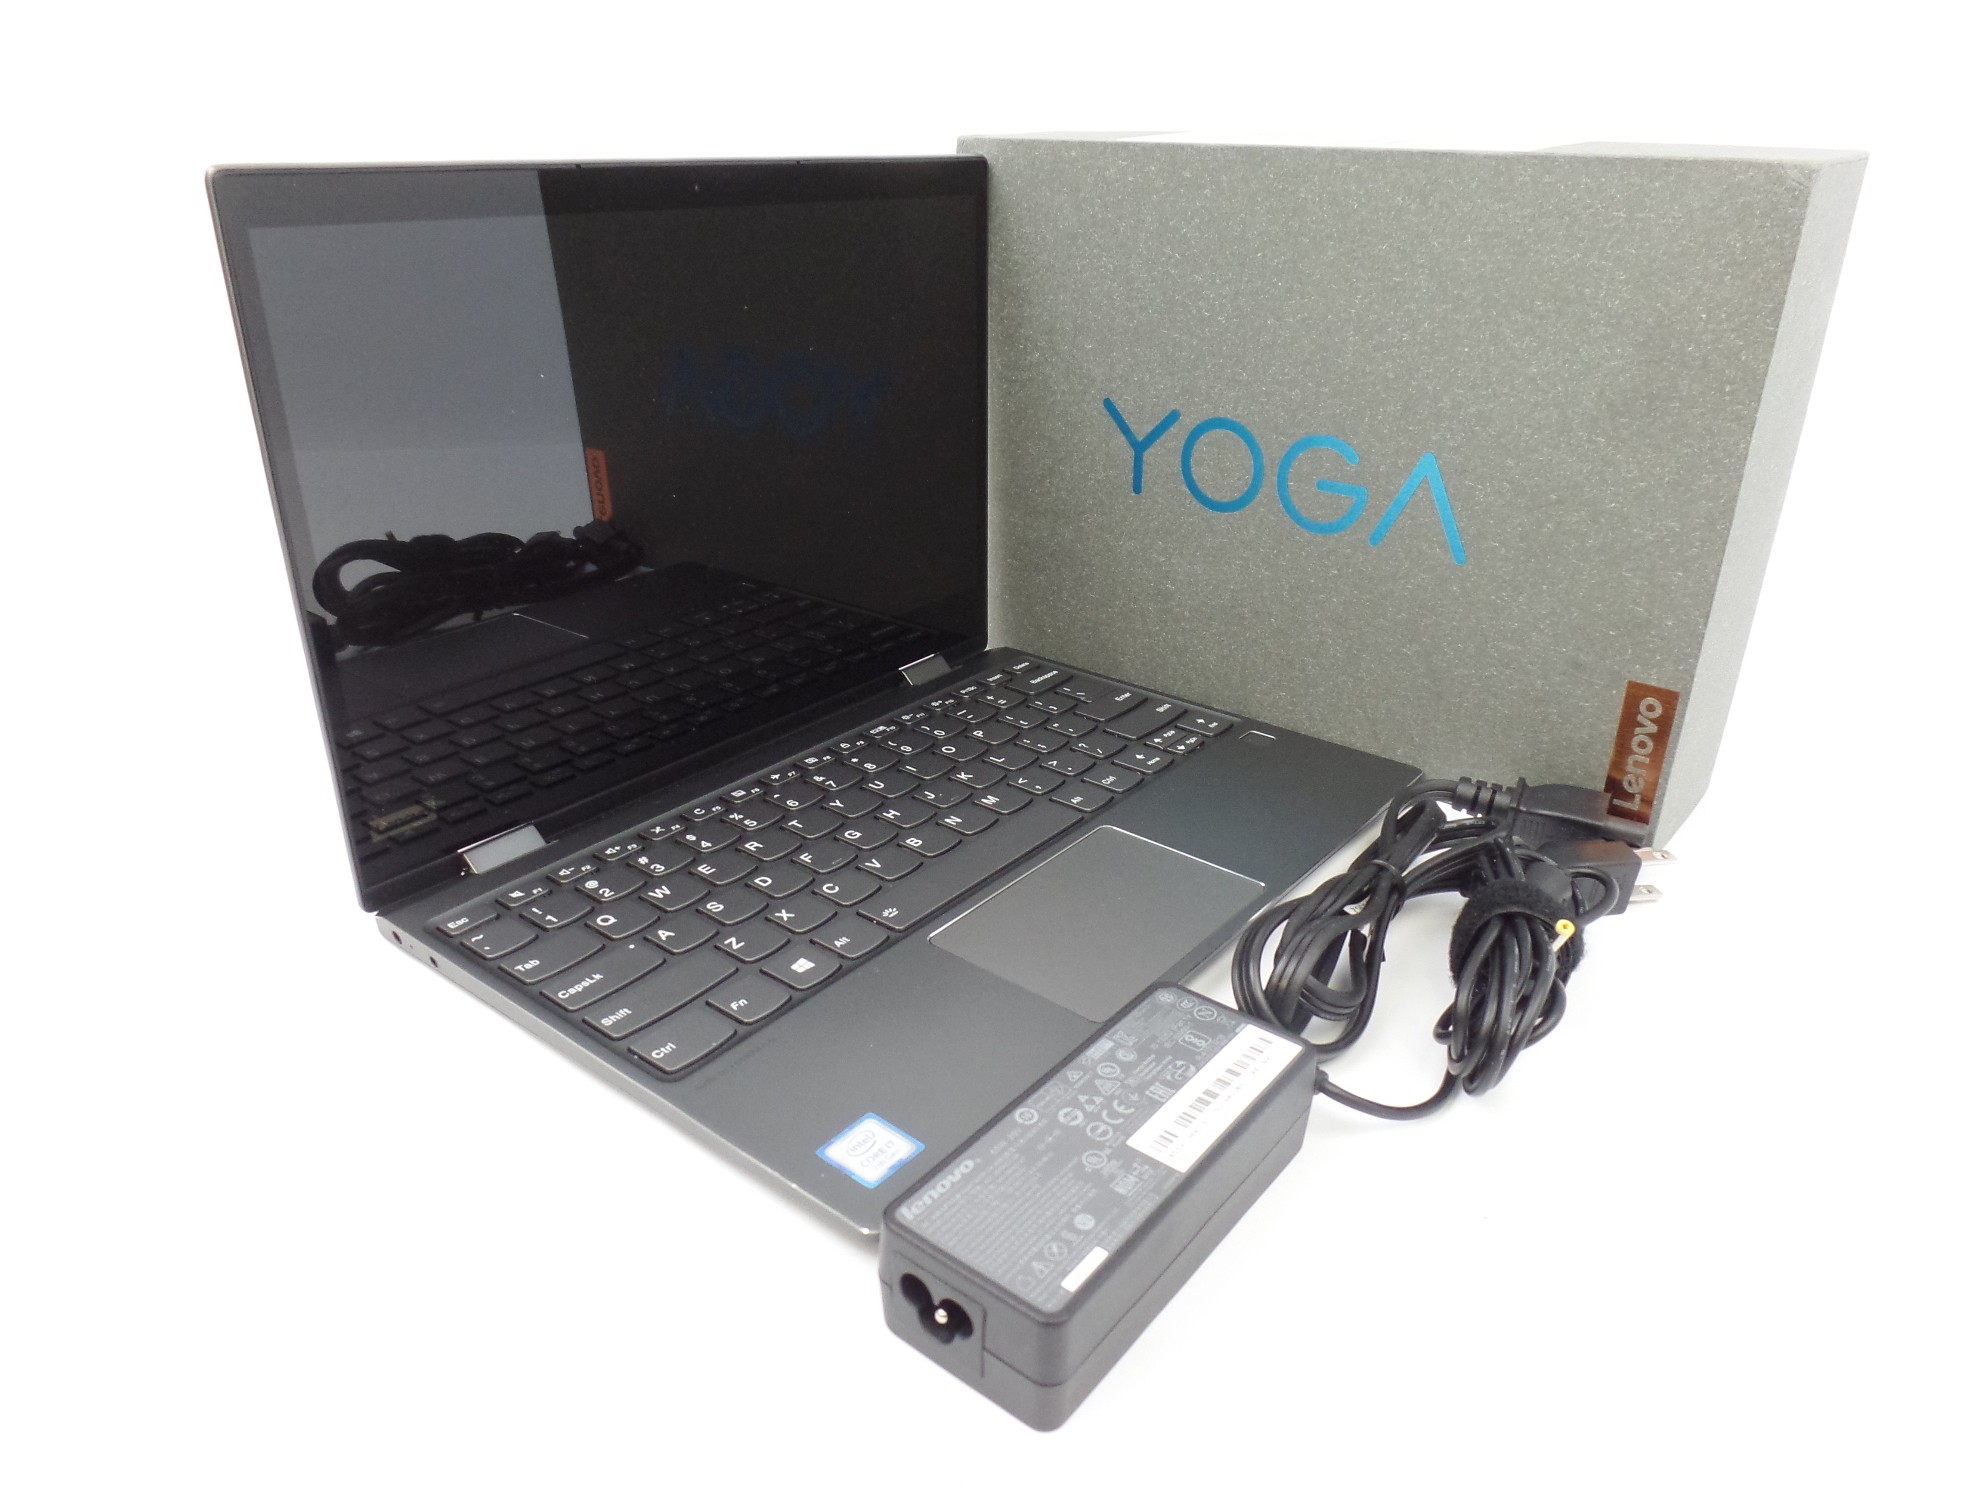 Read: No touch! Lenovo Yoga 720-12IKB 12" FHD i7-7500U 2.7GH 8GB 512GB W10H U1